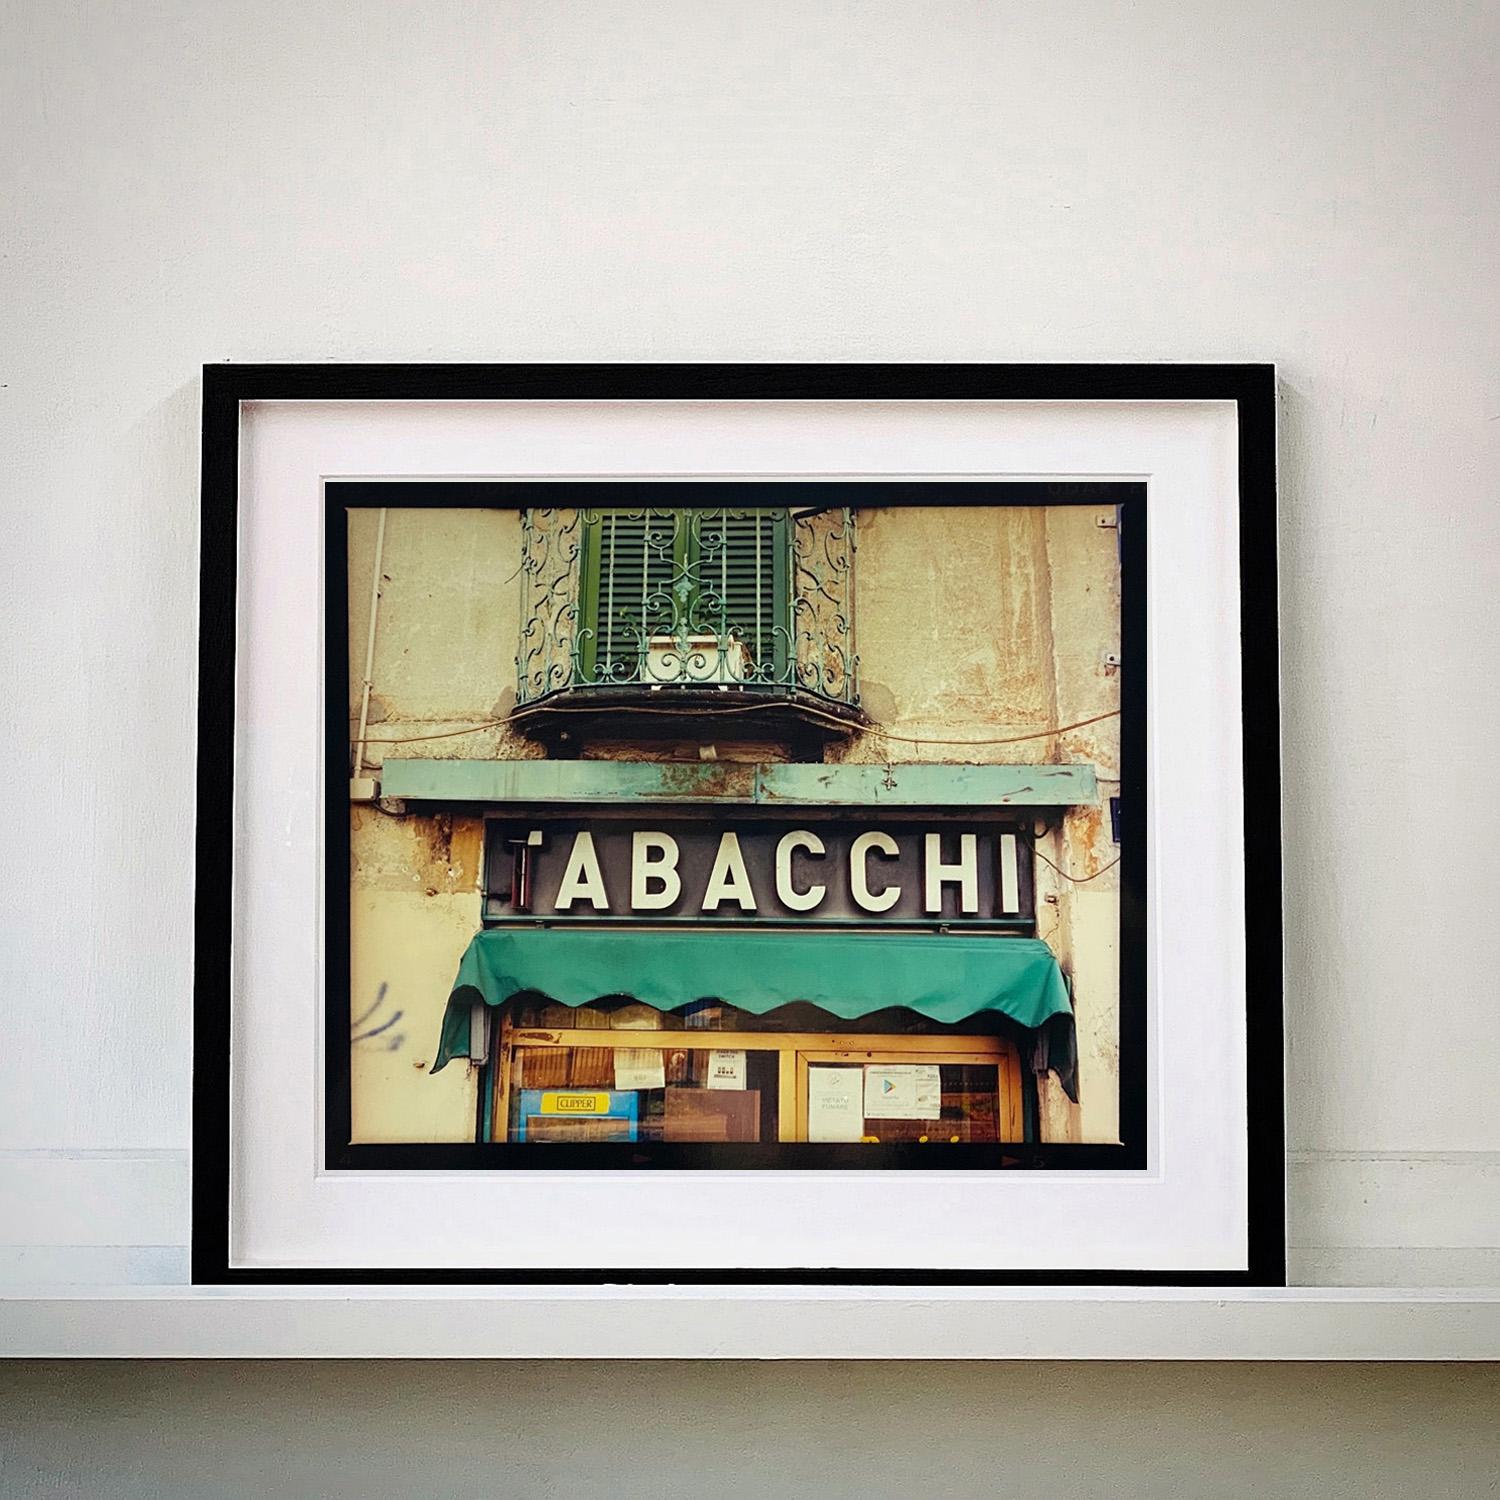 TABACCHI-Schild, Mailand – zeitgenössische Typografie, Pop-Art-Farbfotografie – Print von Richard Heeps